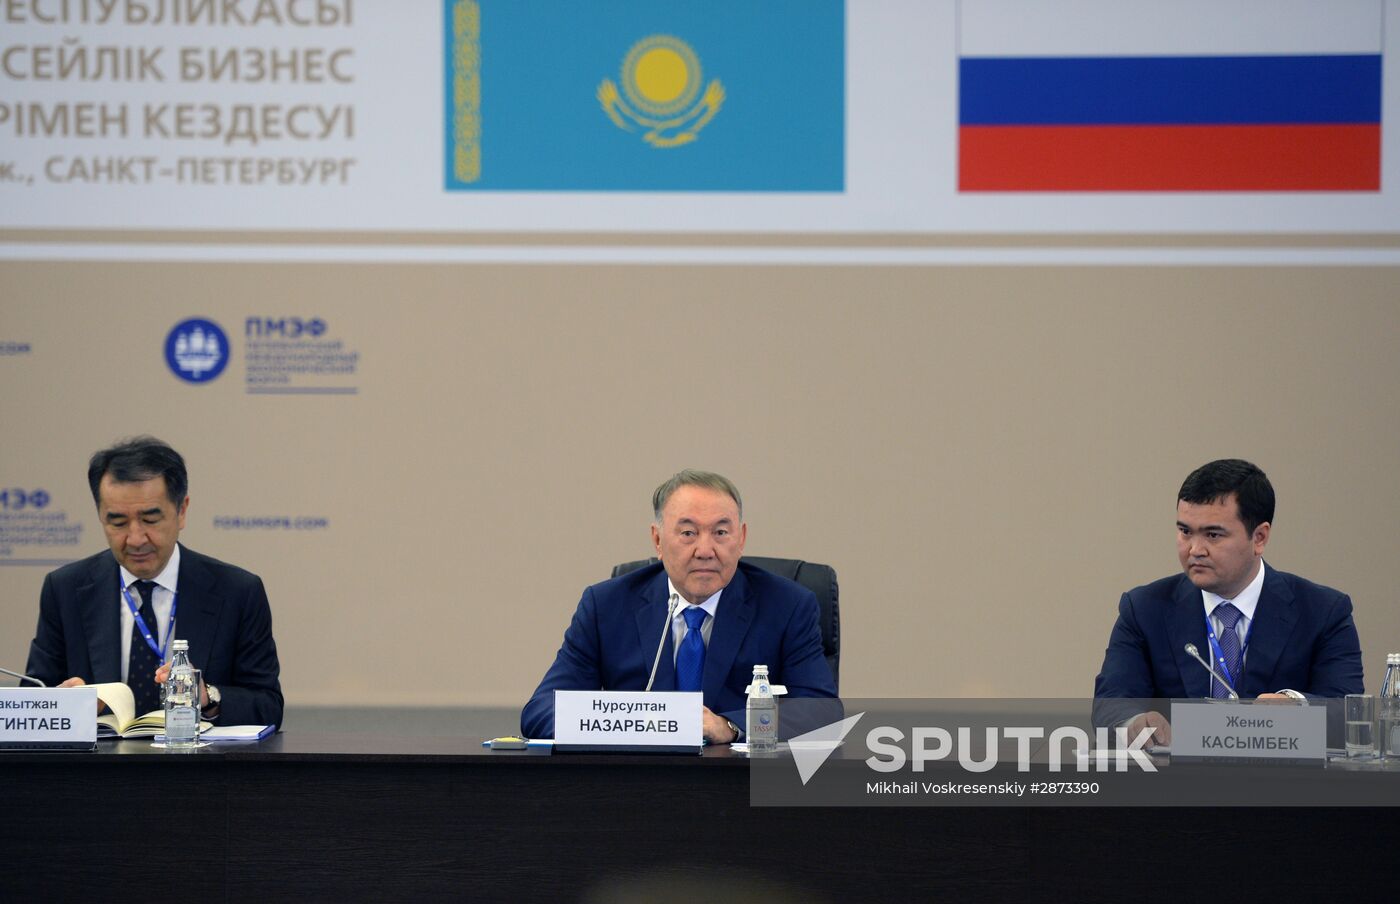 Kazakh President Nursultan Nazarbayev meets with Russian businessmen at SPIEF 2016